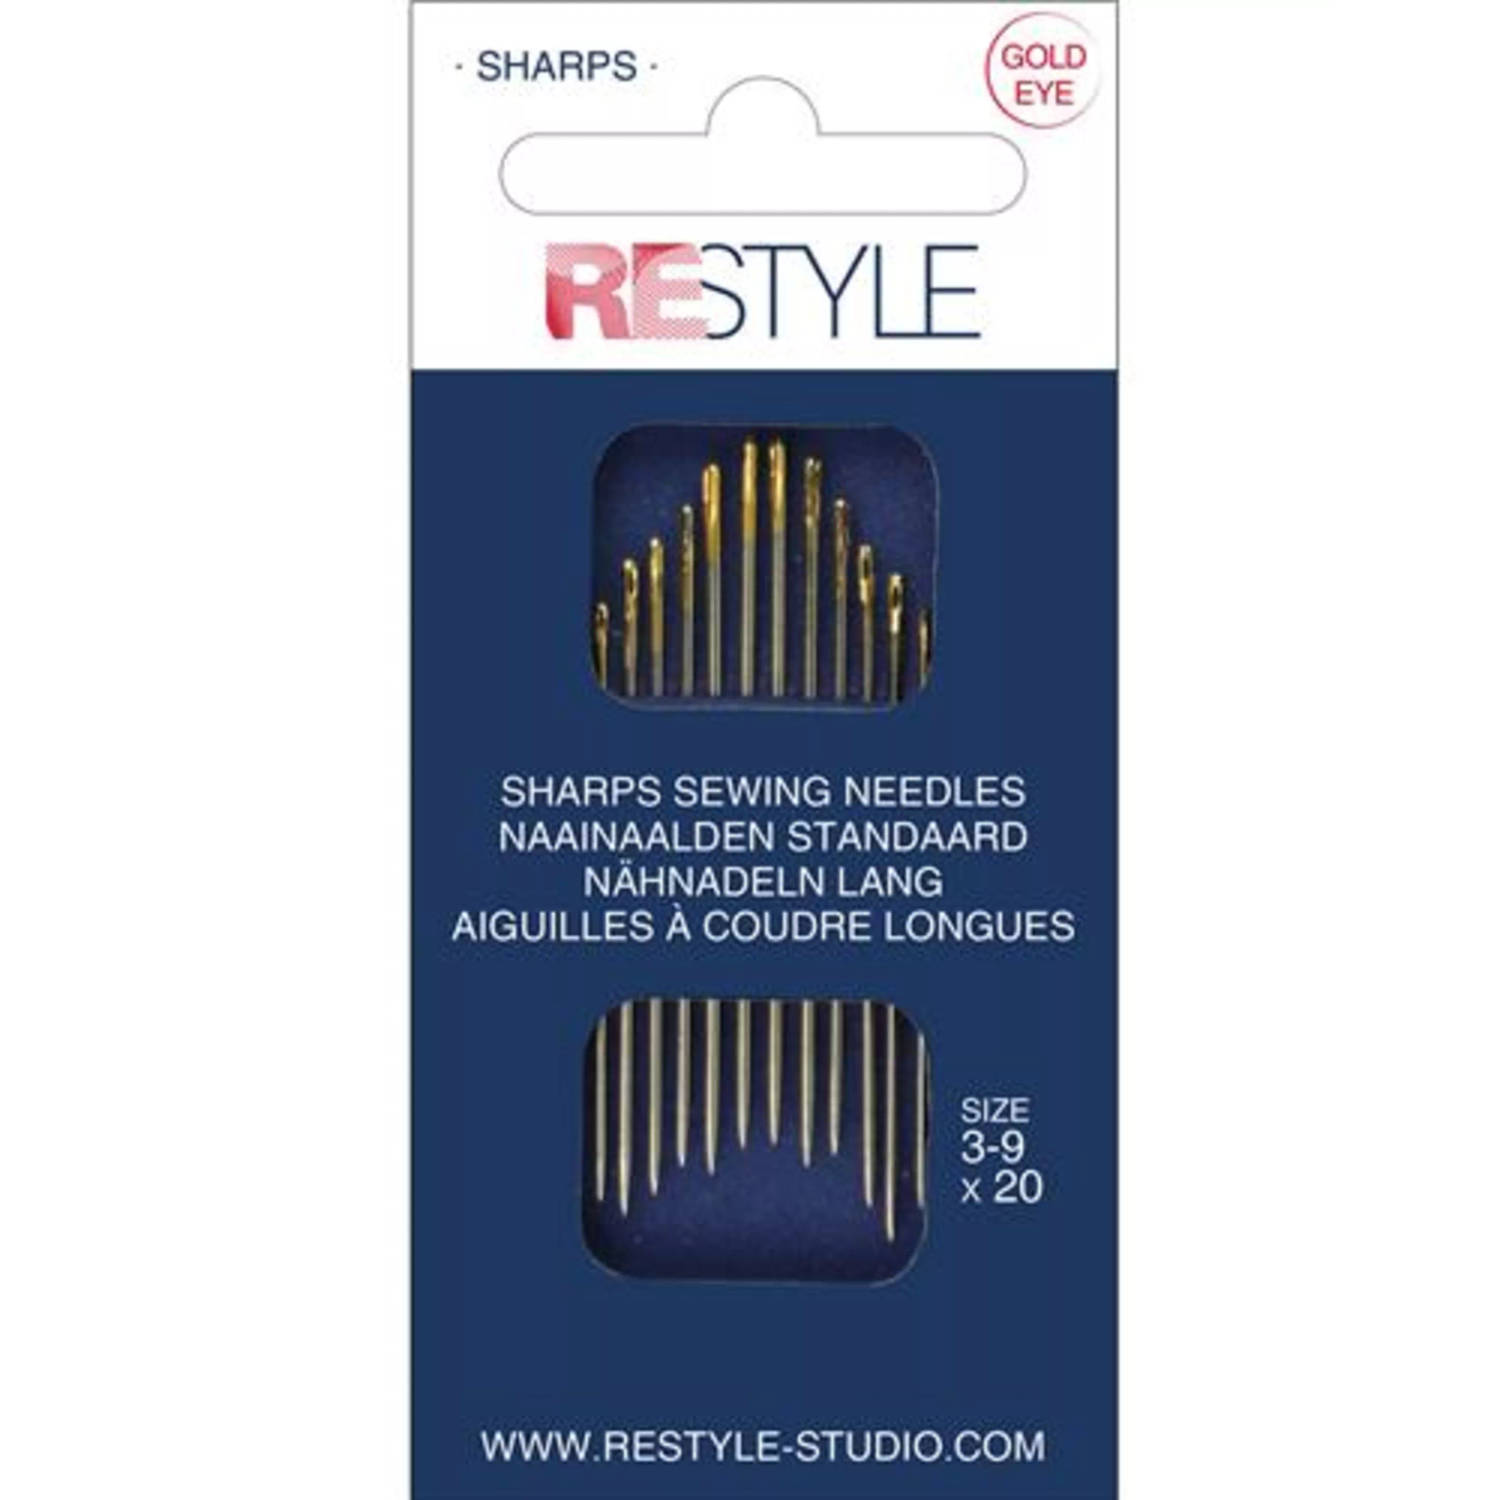 ReStyle 015.10300 Sharps naainaalden standaard 3 -9, 20 stuks